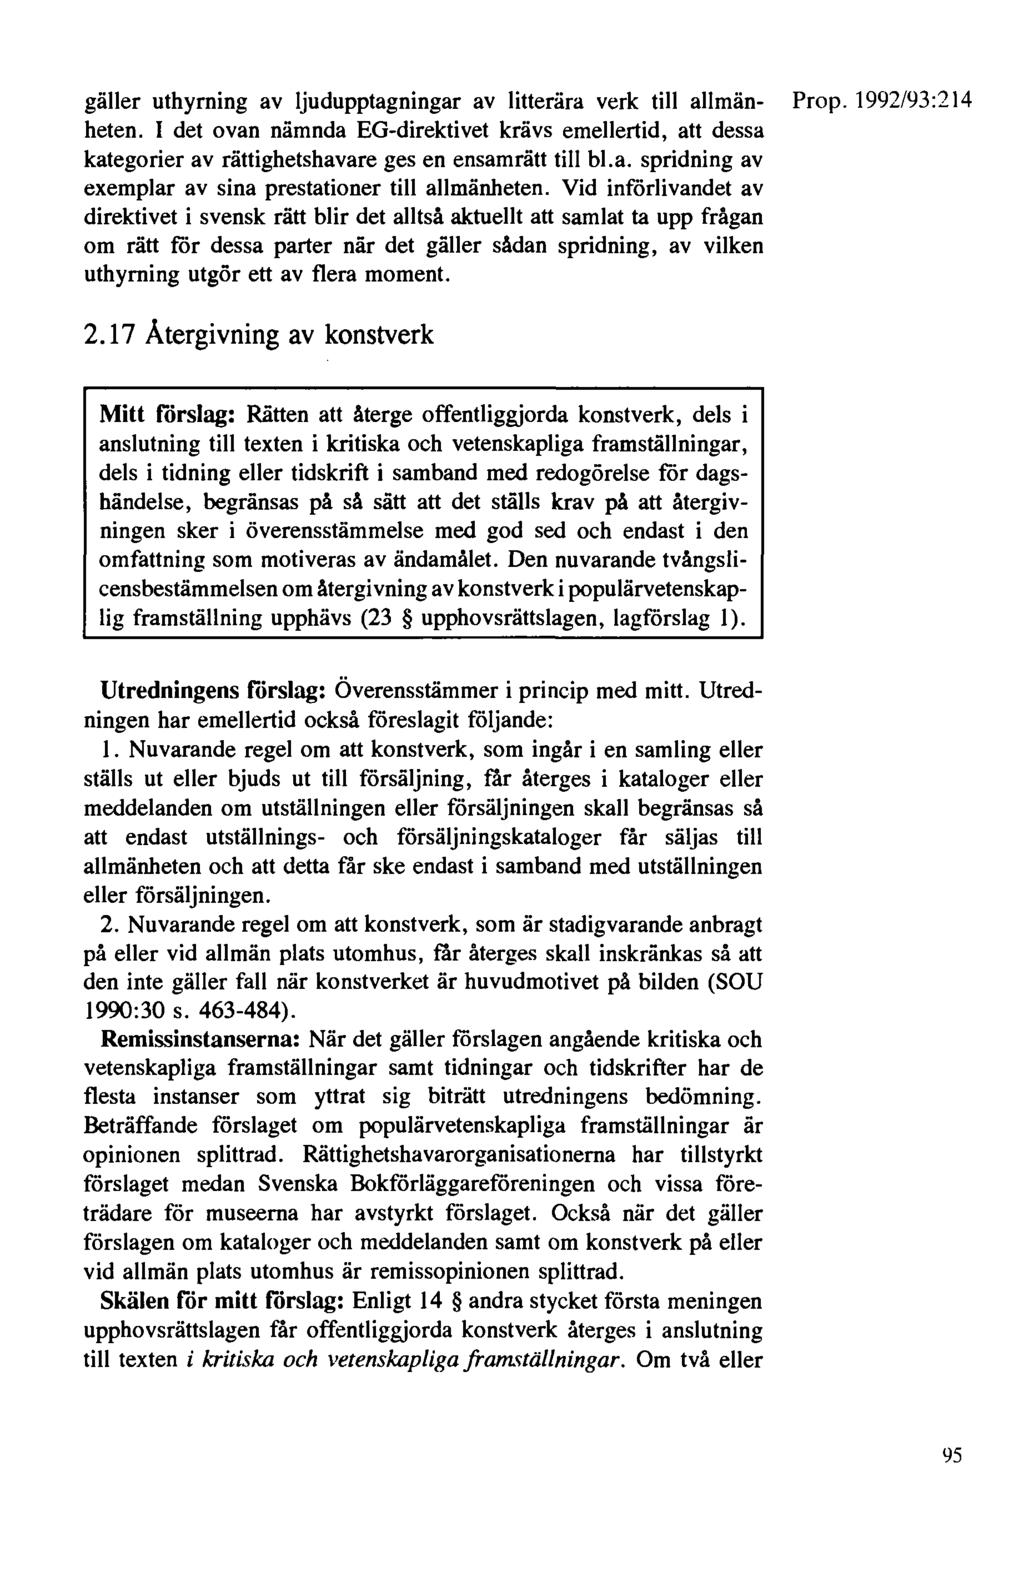 gäller uthyrning av ljudupptagningar av litterära verk till allmän- Prop. 1992/93:214 beten.